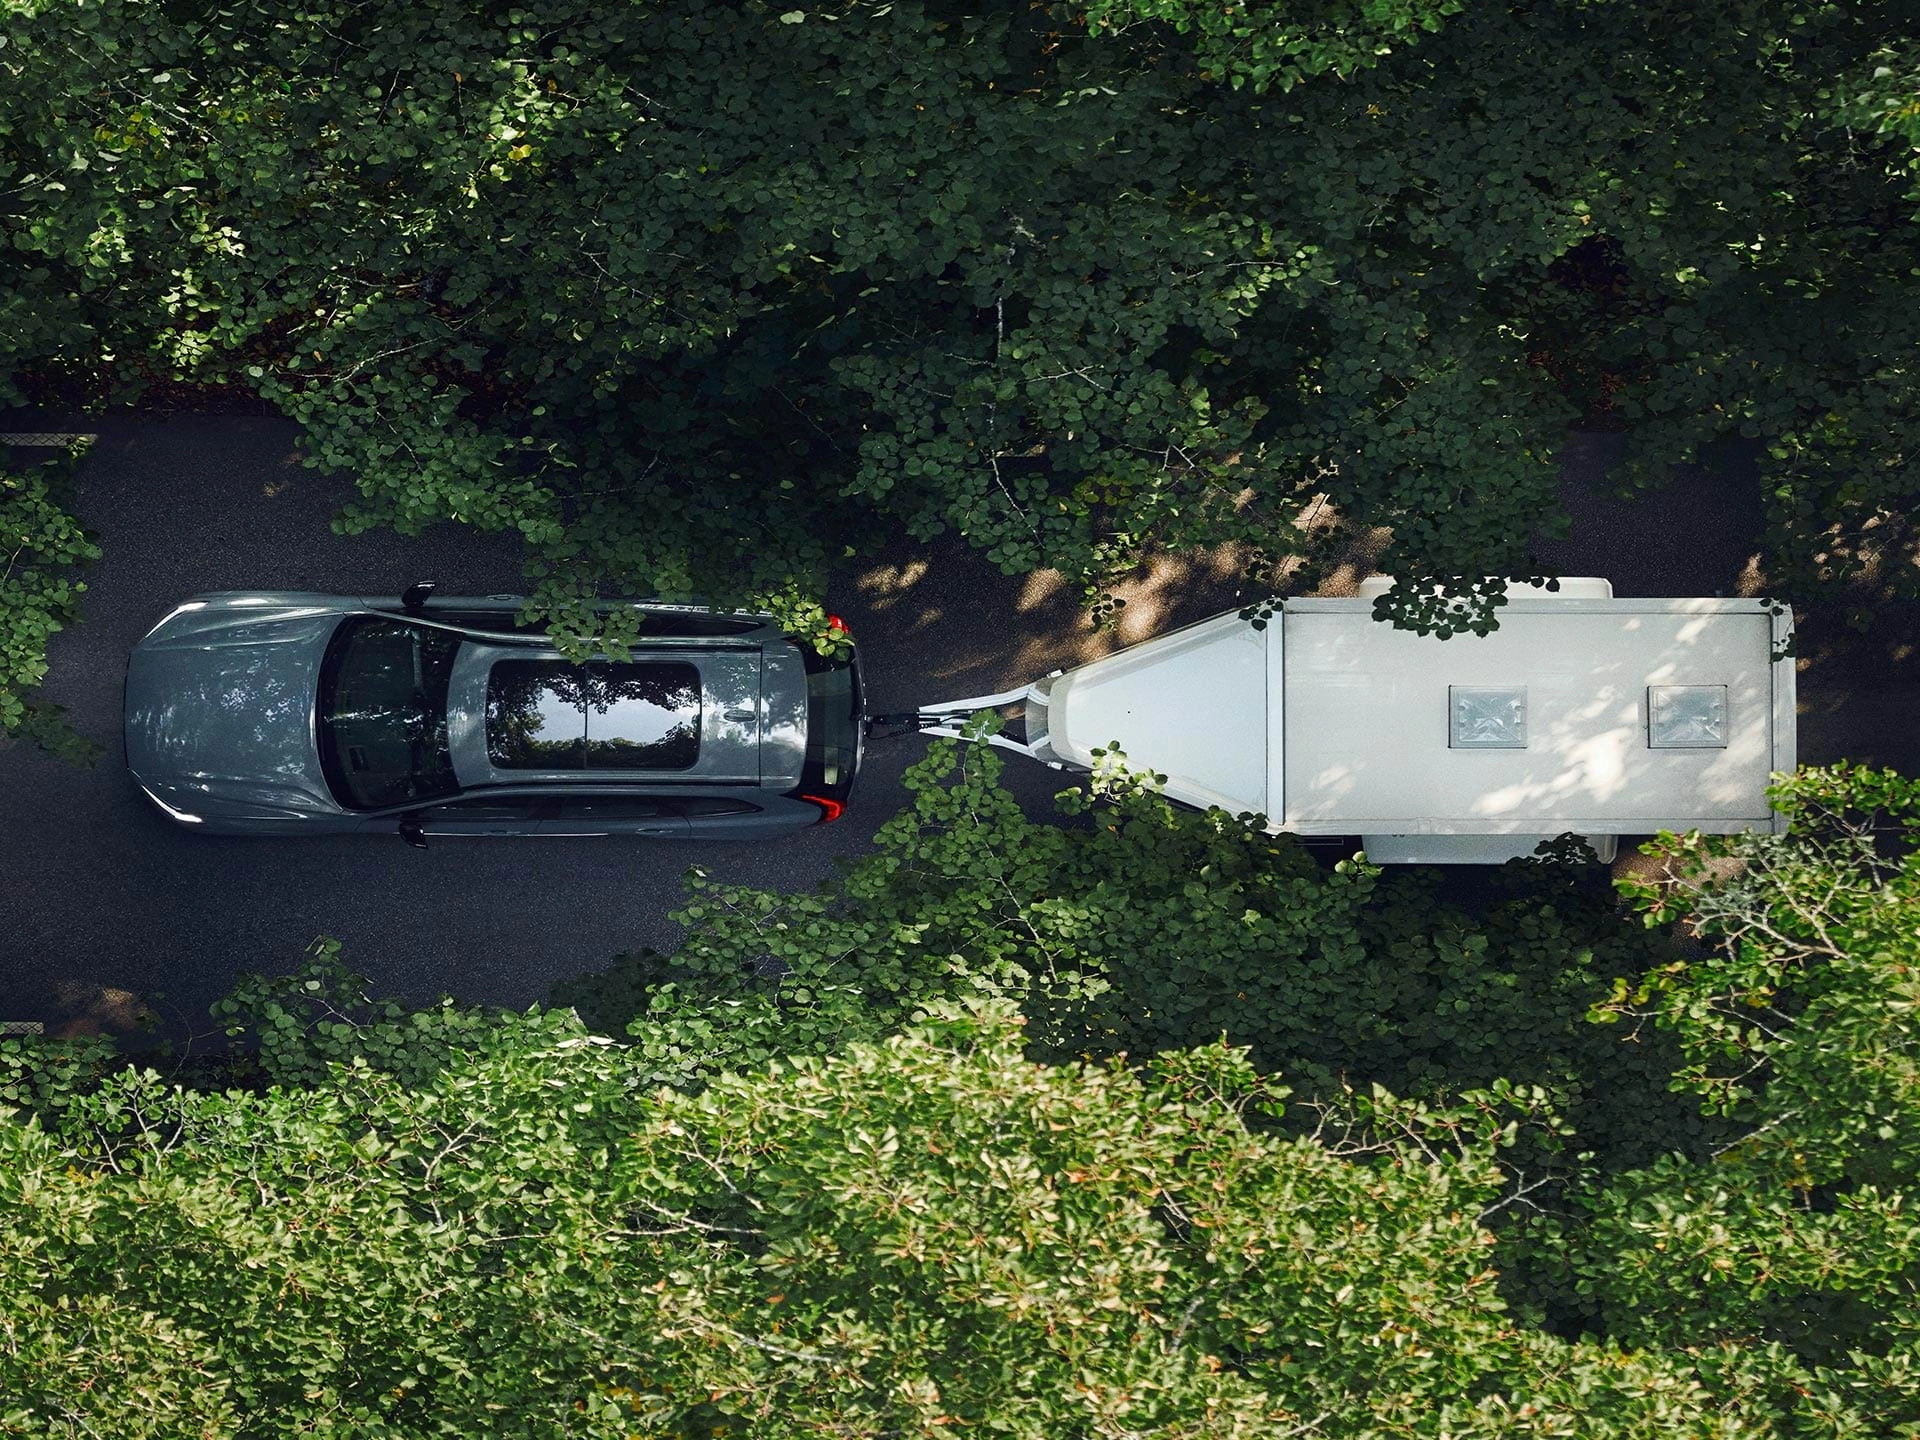 Pogled iz ptičje perspektive na SUV Volvo koji vuče bijelu prikolicu duž ceste pokrivene lišćem na sunčan dan.